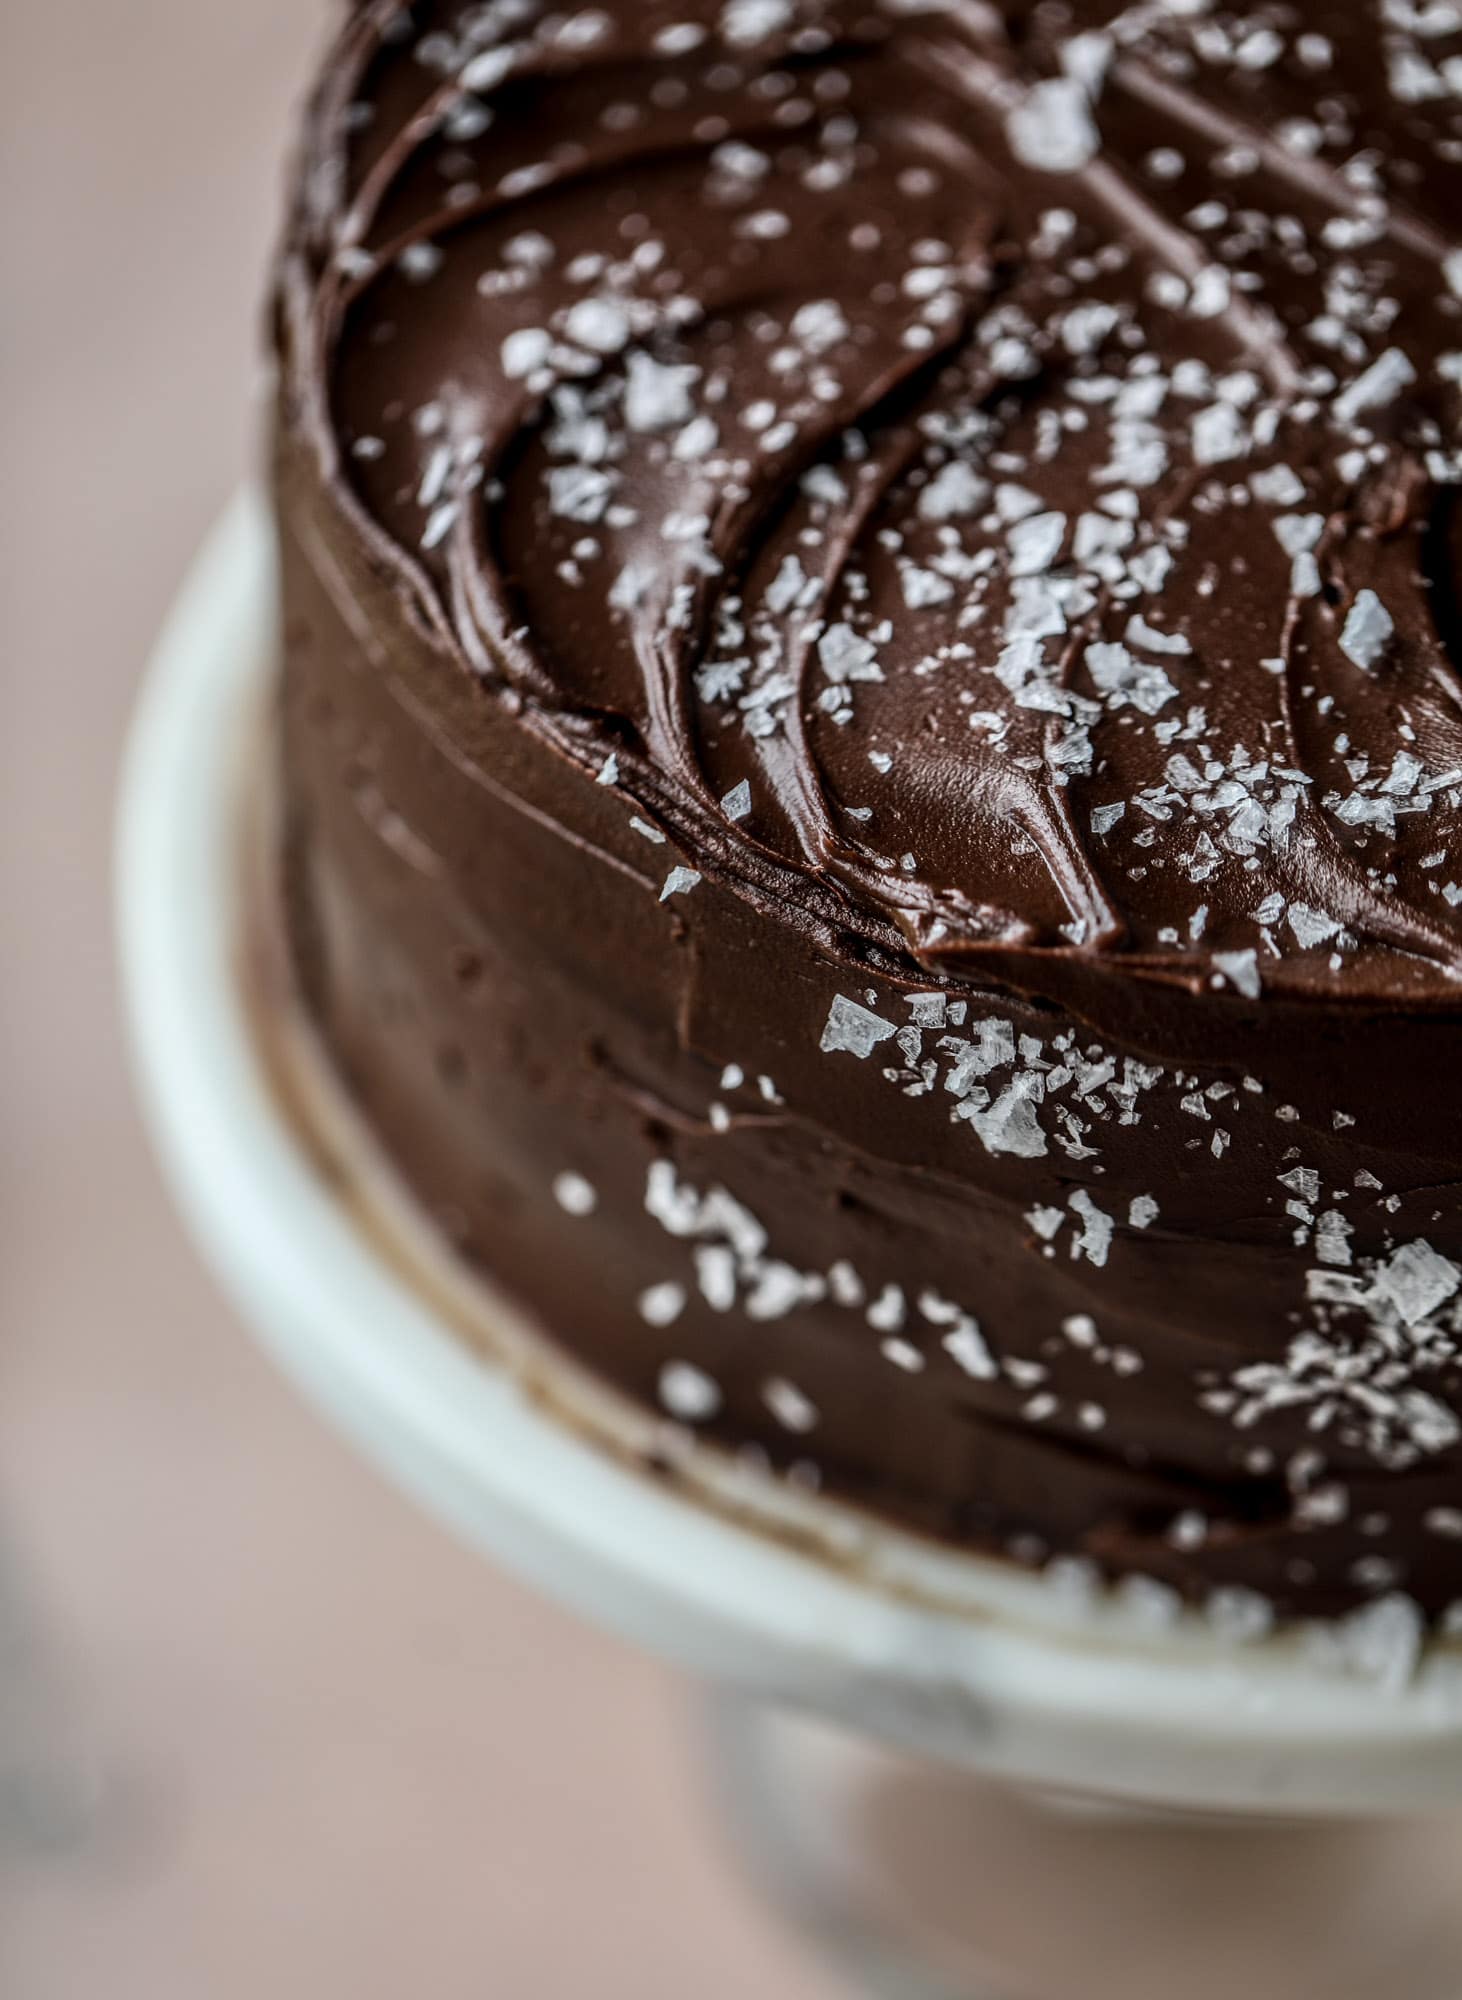 这个咸黑巧克力黑啤蛋糕绝对是神圣的!它极其丰富，非常适合人群或派对。南瓜烈性面糊烘烤成蓬松的后半部分，再裹上一层超级松软的巧克力甘纳许。完美的巧克力爱好者!I howsweeteats.com #黑巧克力#黑啤#蛋糕#咸